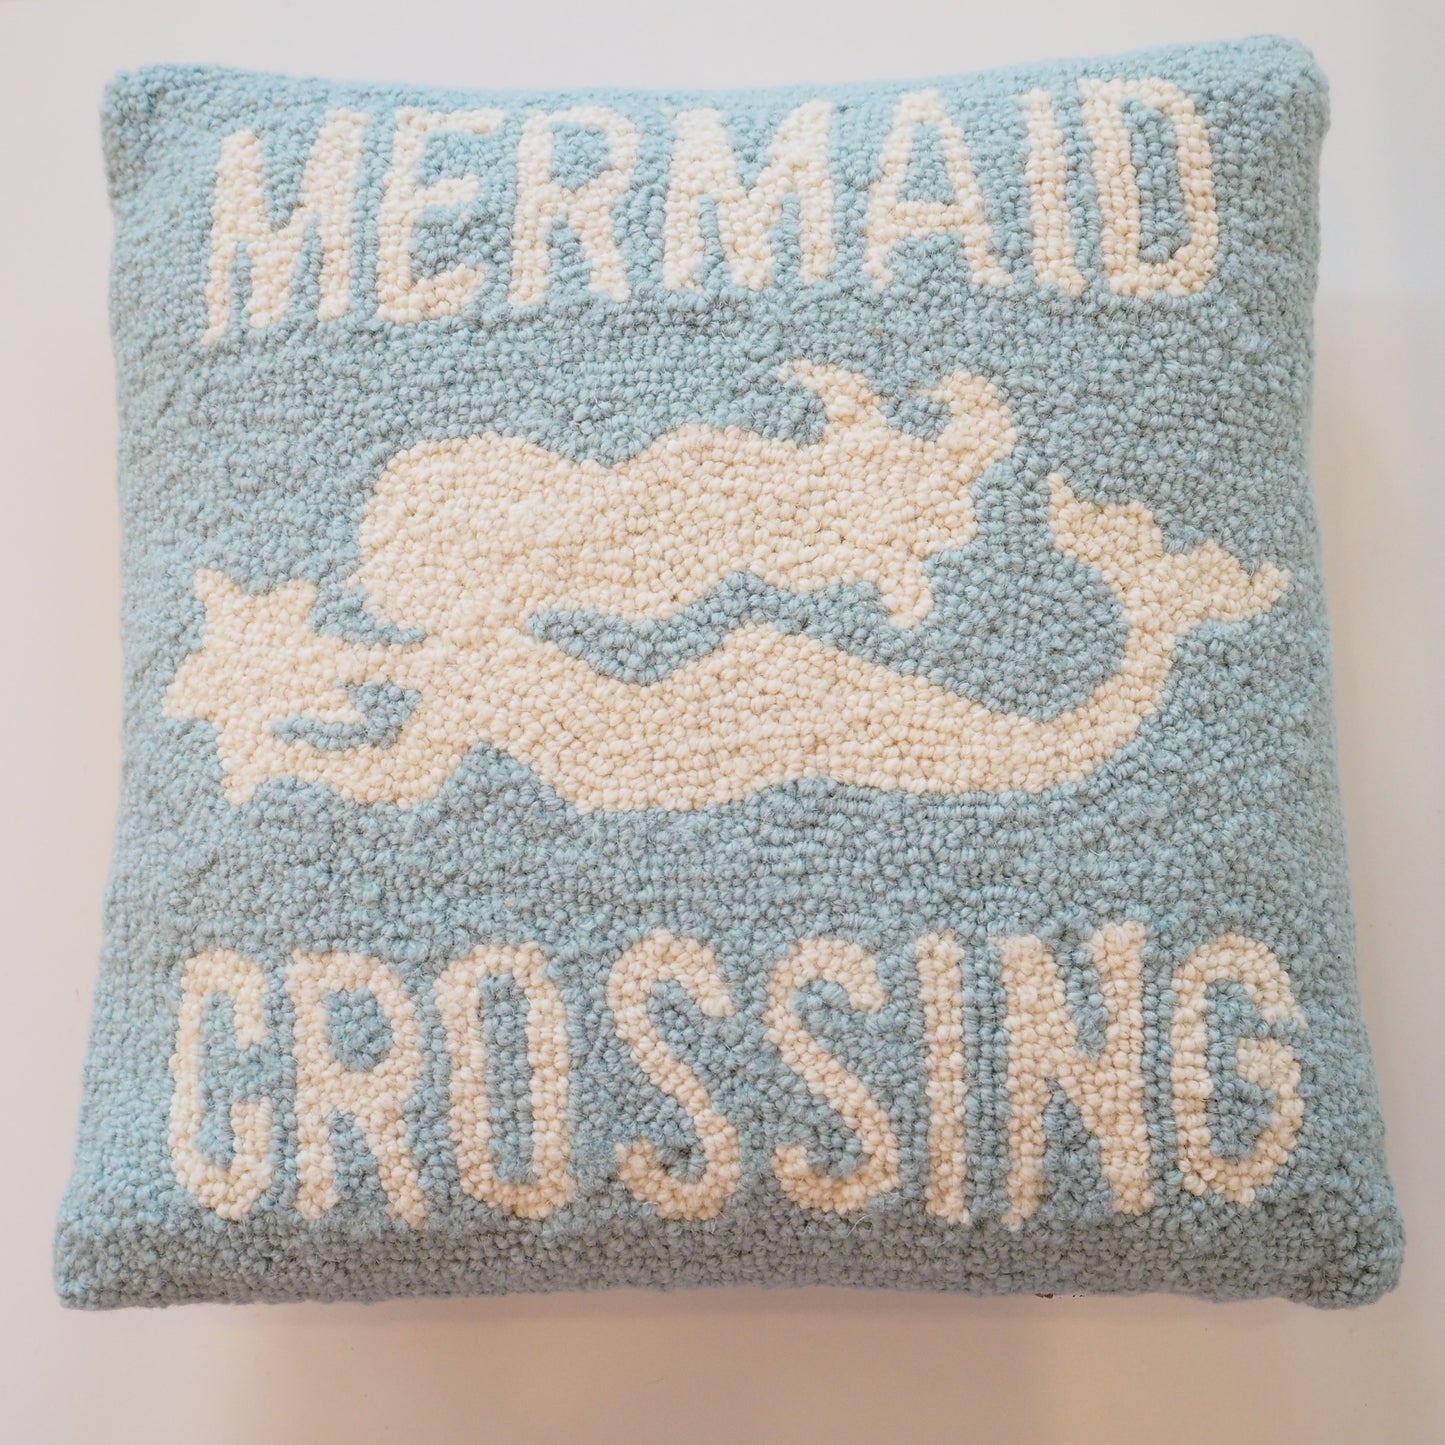 Mermaid Crossing Hooked Pillow